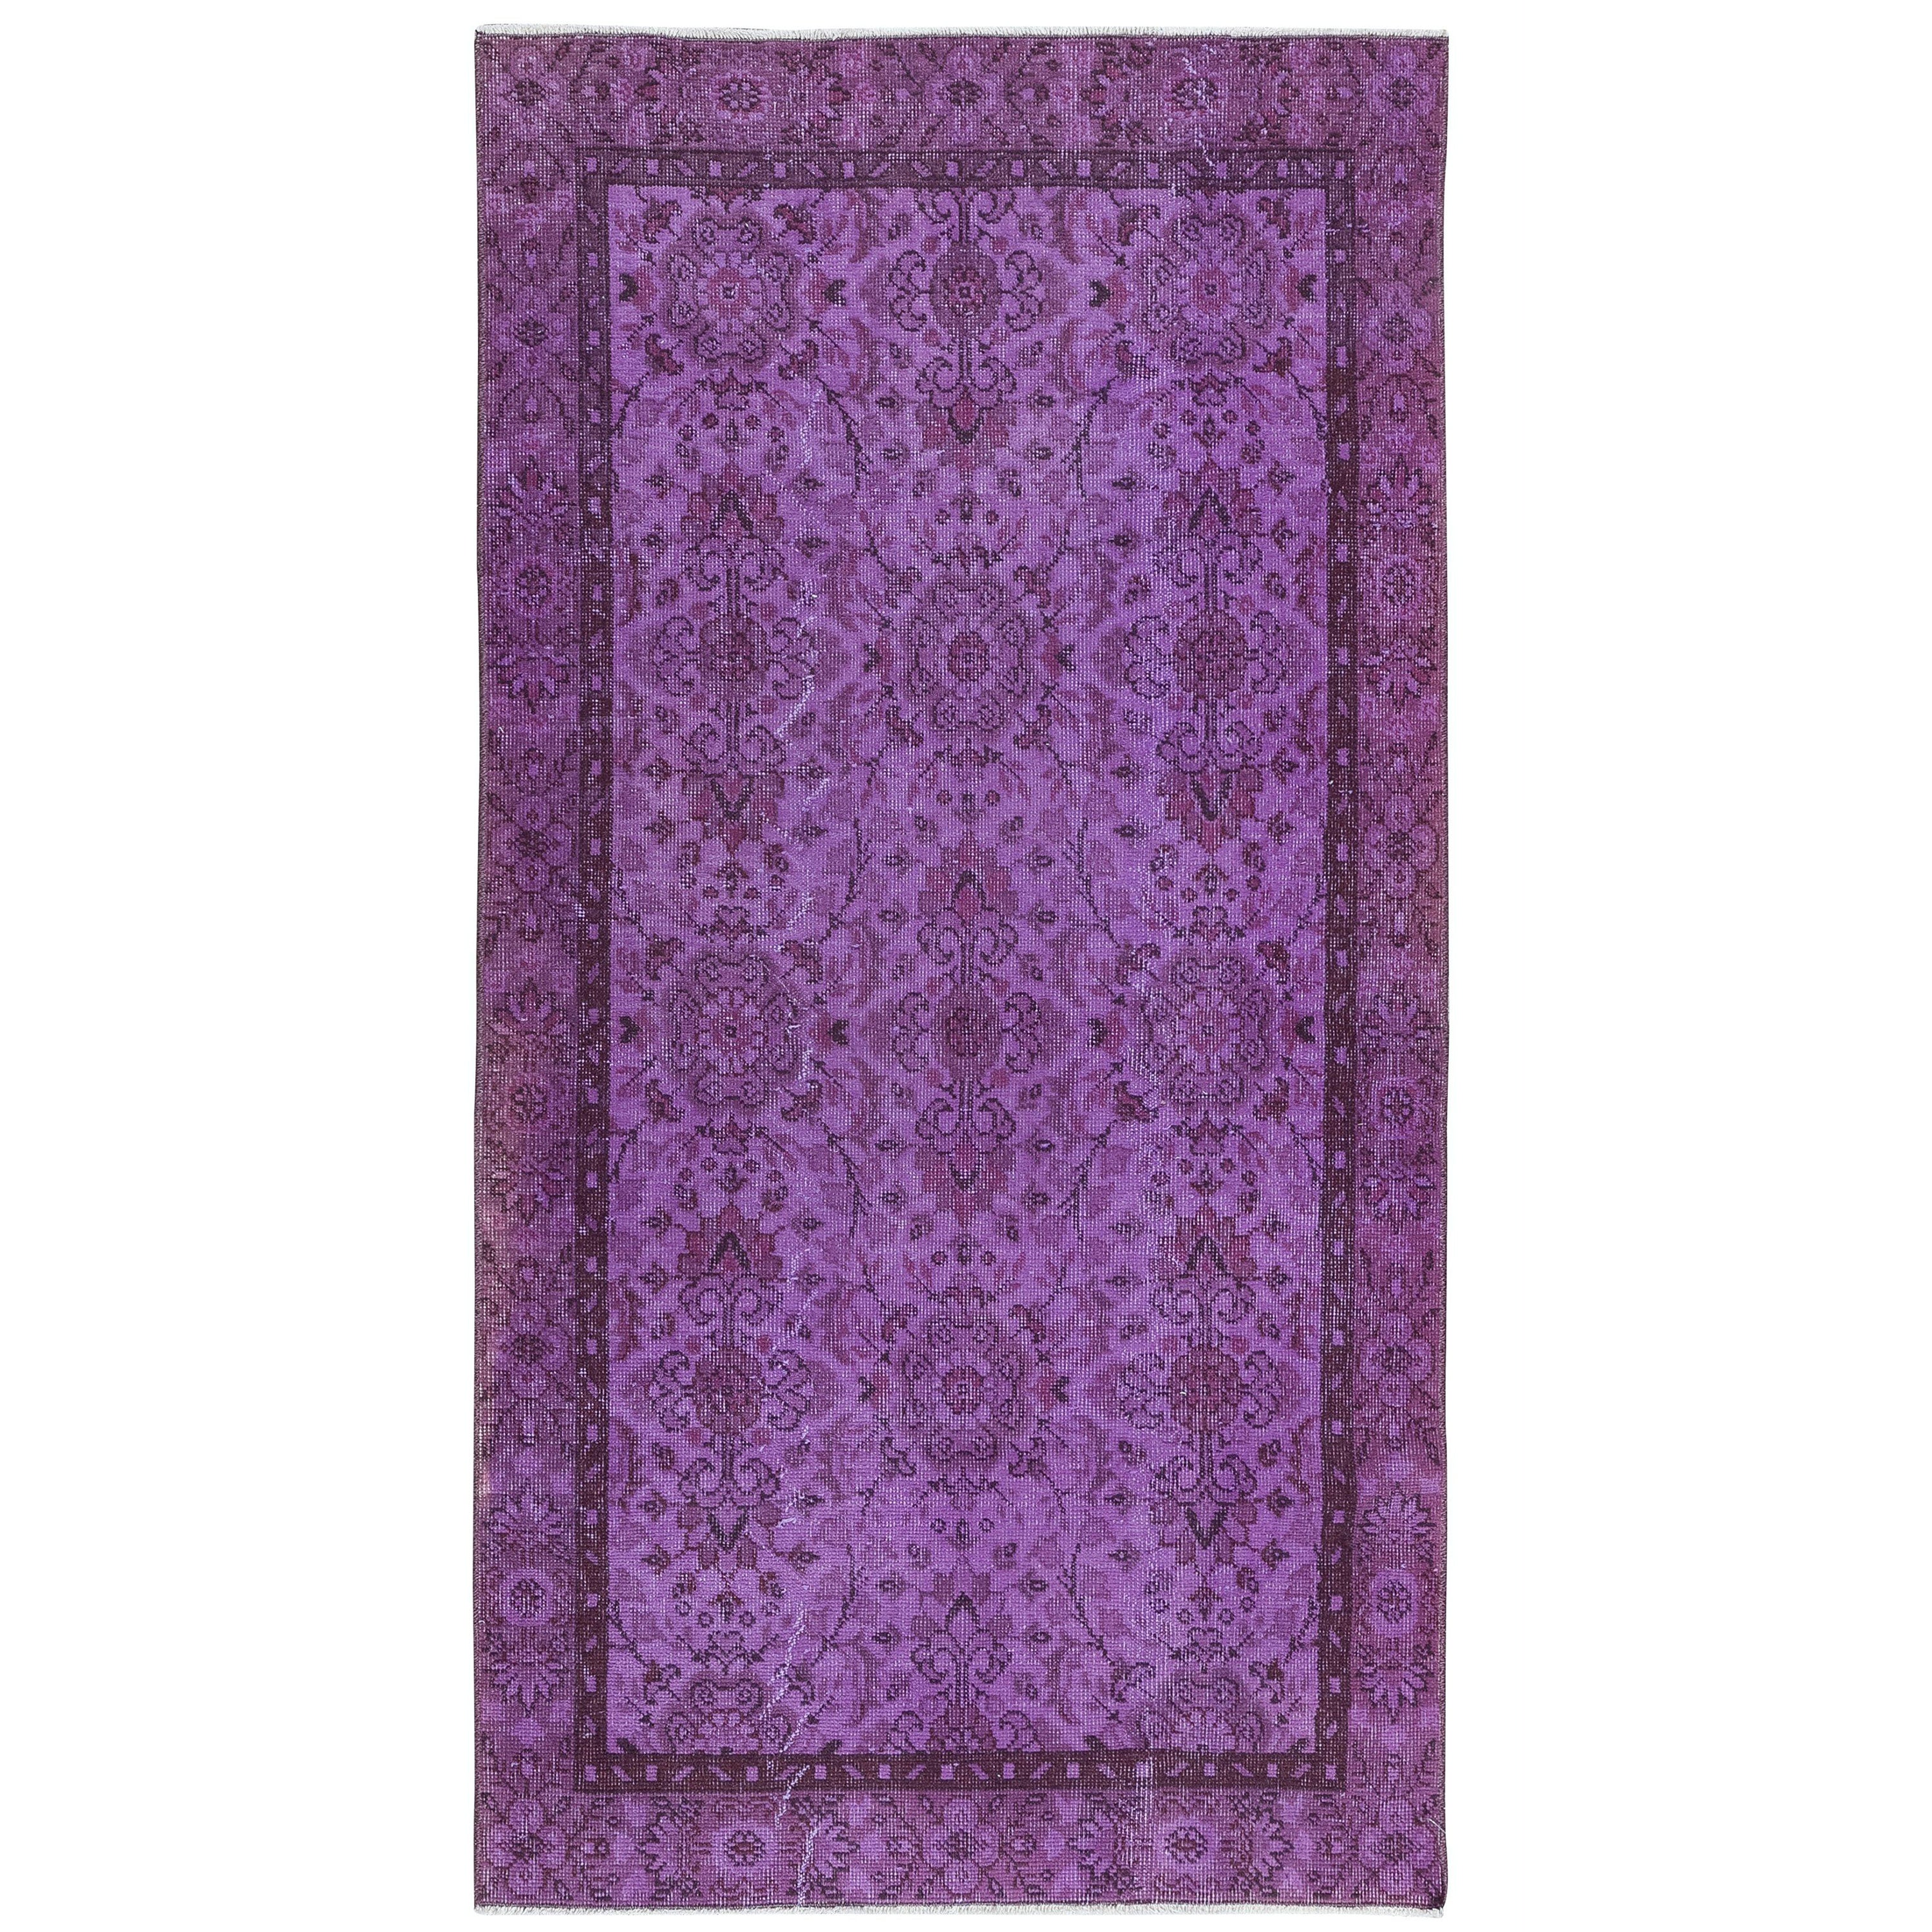 3.7x6,8 Ft Floral-Teppich in Lila für moderne Inneneinrichtung, handgeknüpft in der Türkei